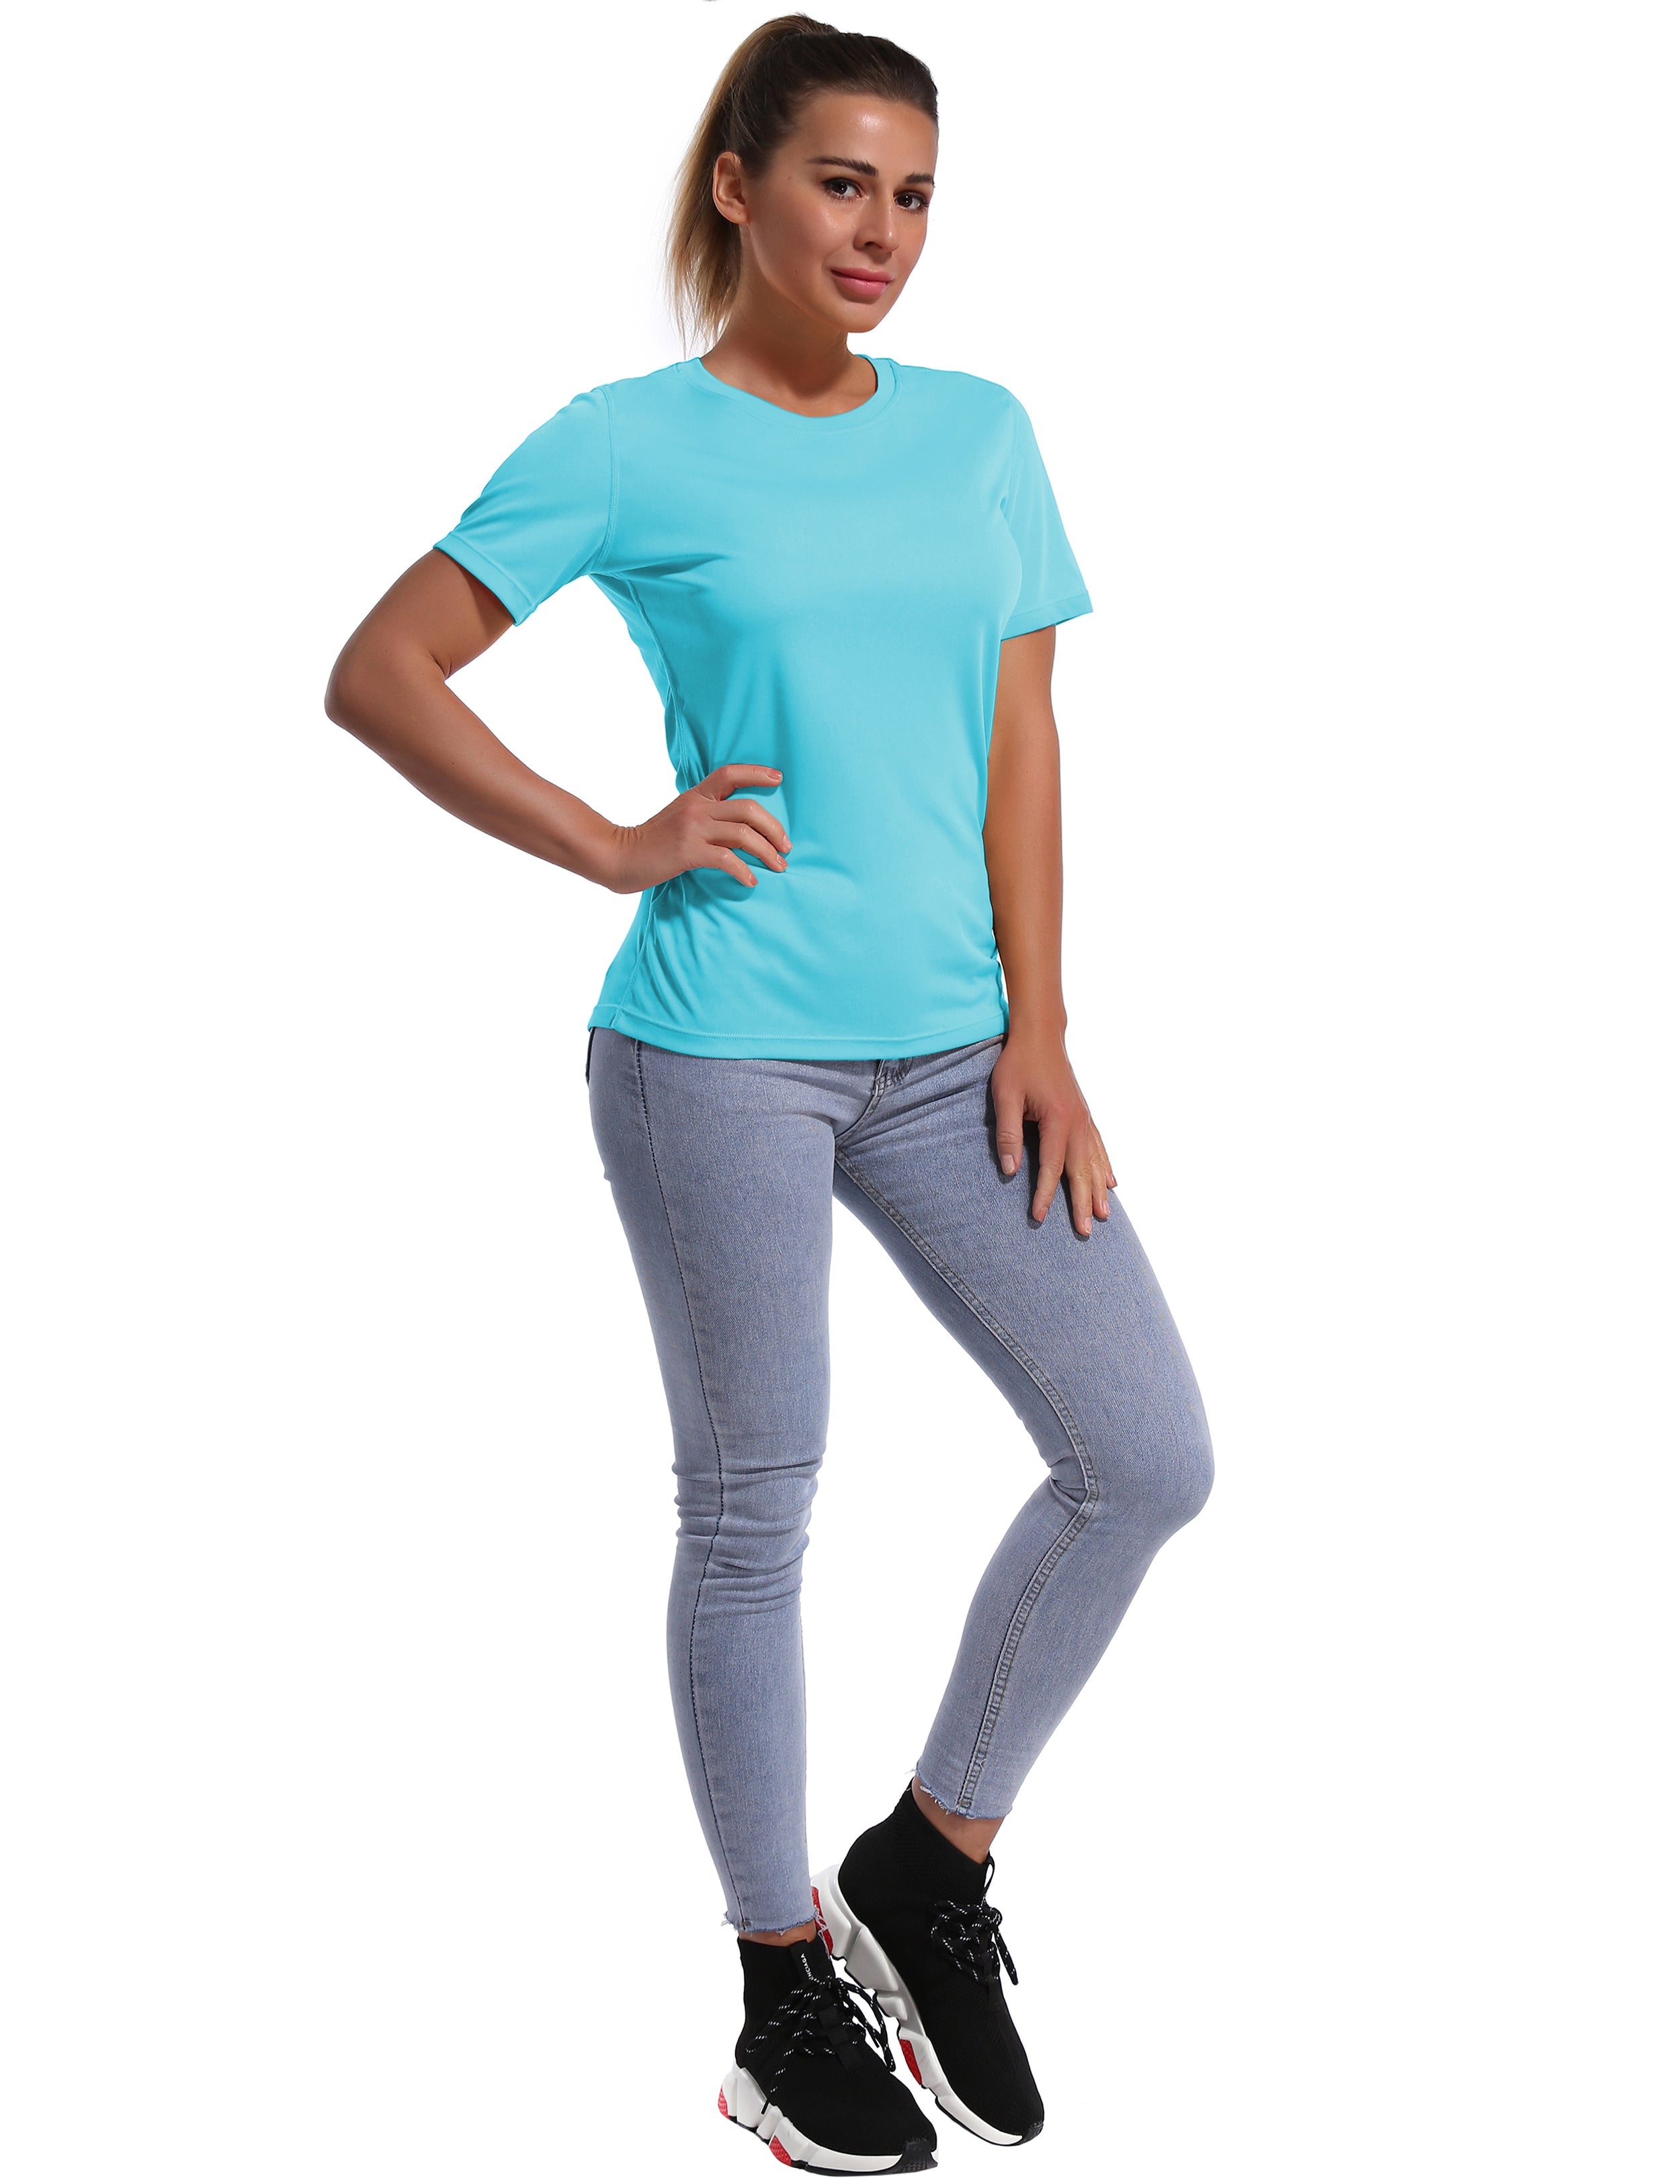 Short Sleeve Athletic Shirts blue_Jogging